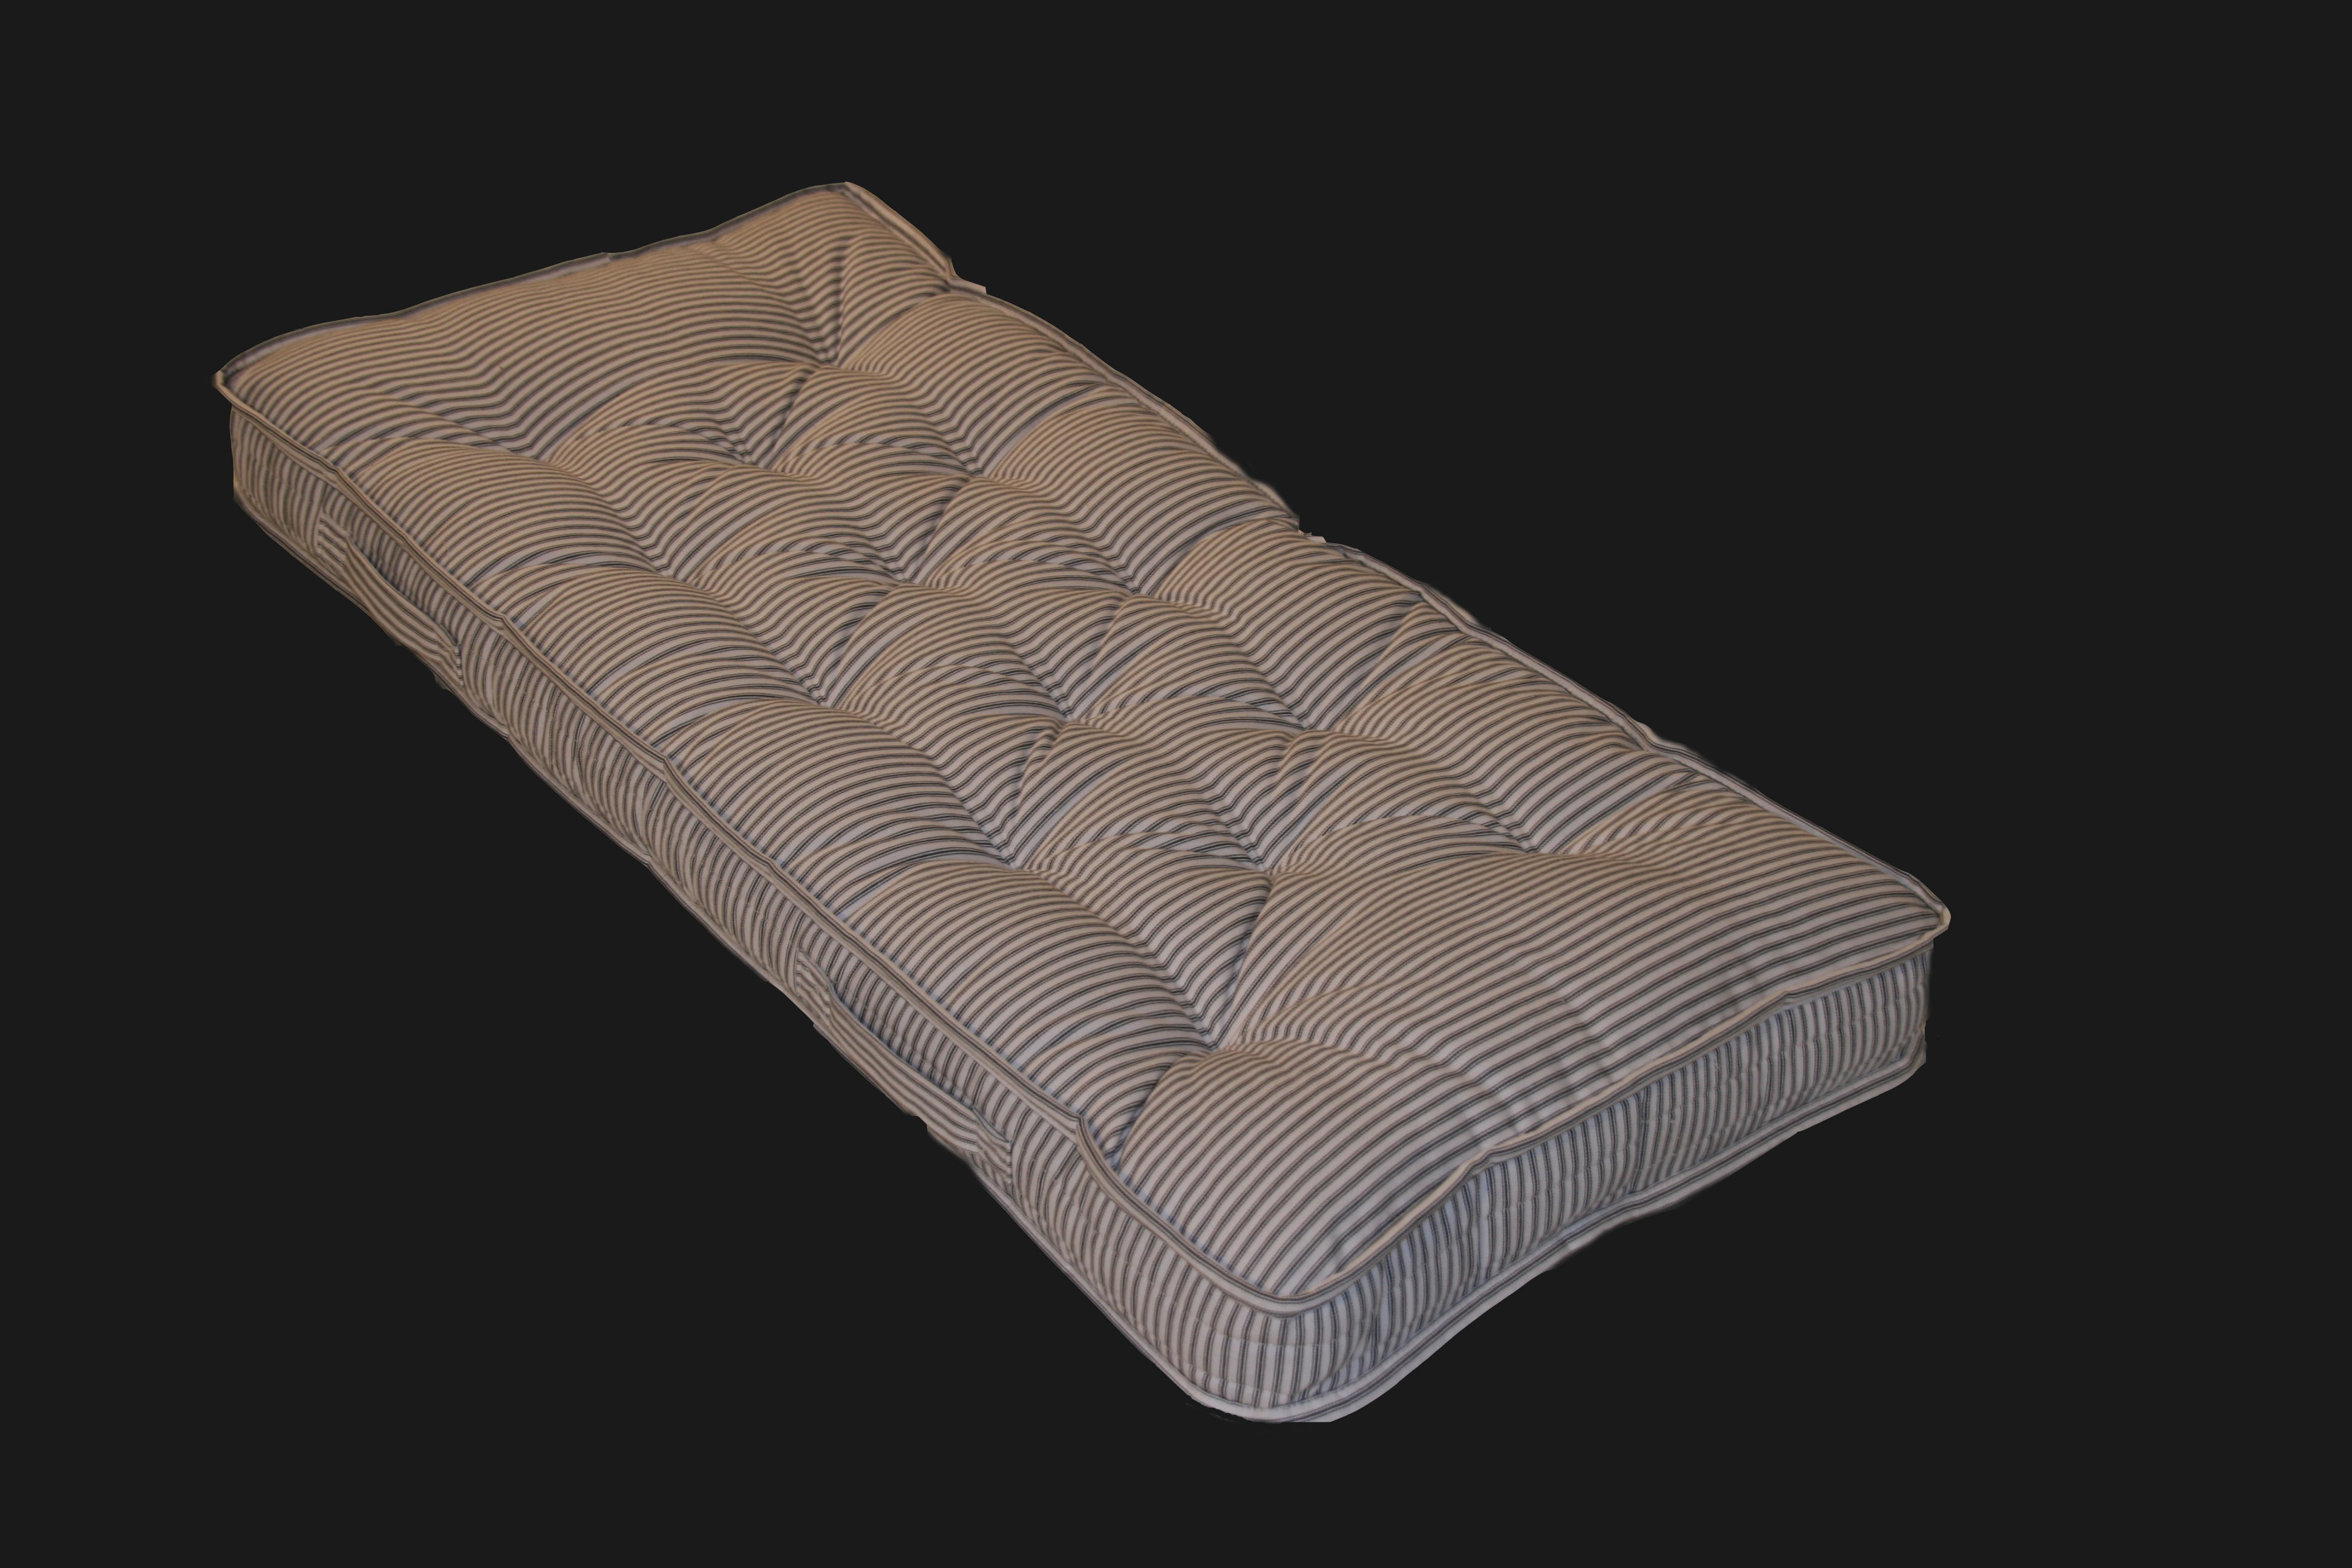 cot mattress fantastic furniture